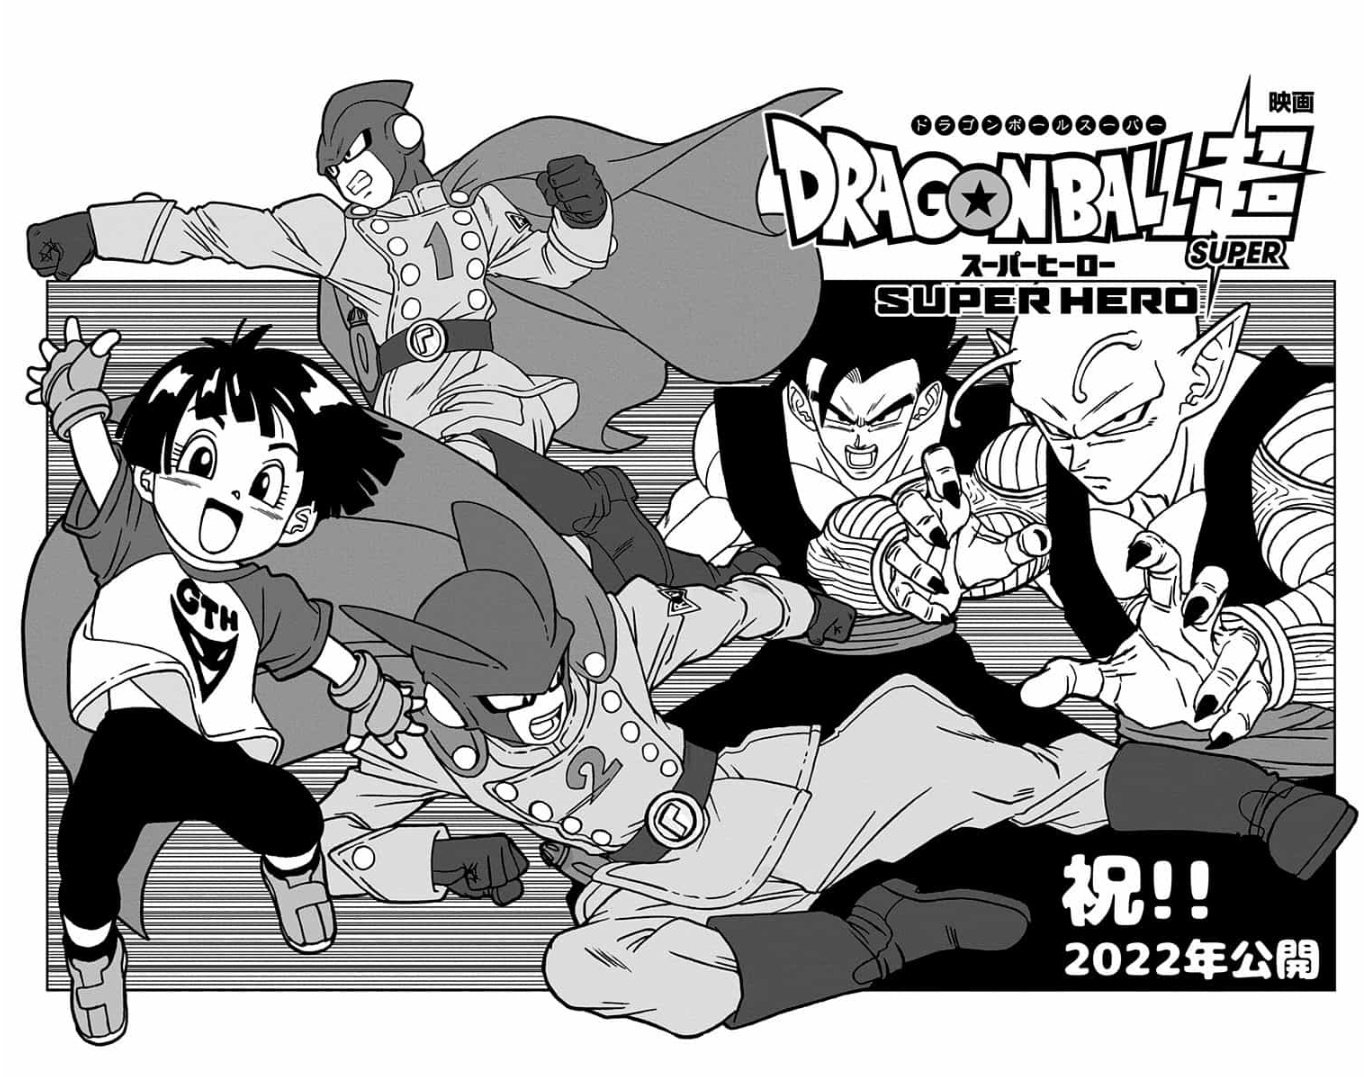 Dragon Ball Super: Mangaká desenha novos personagens do anime no